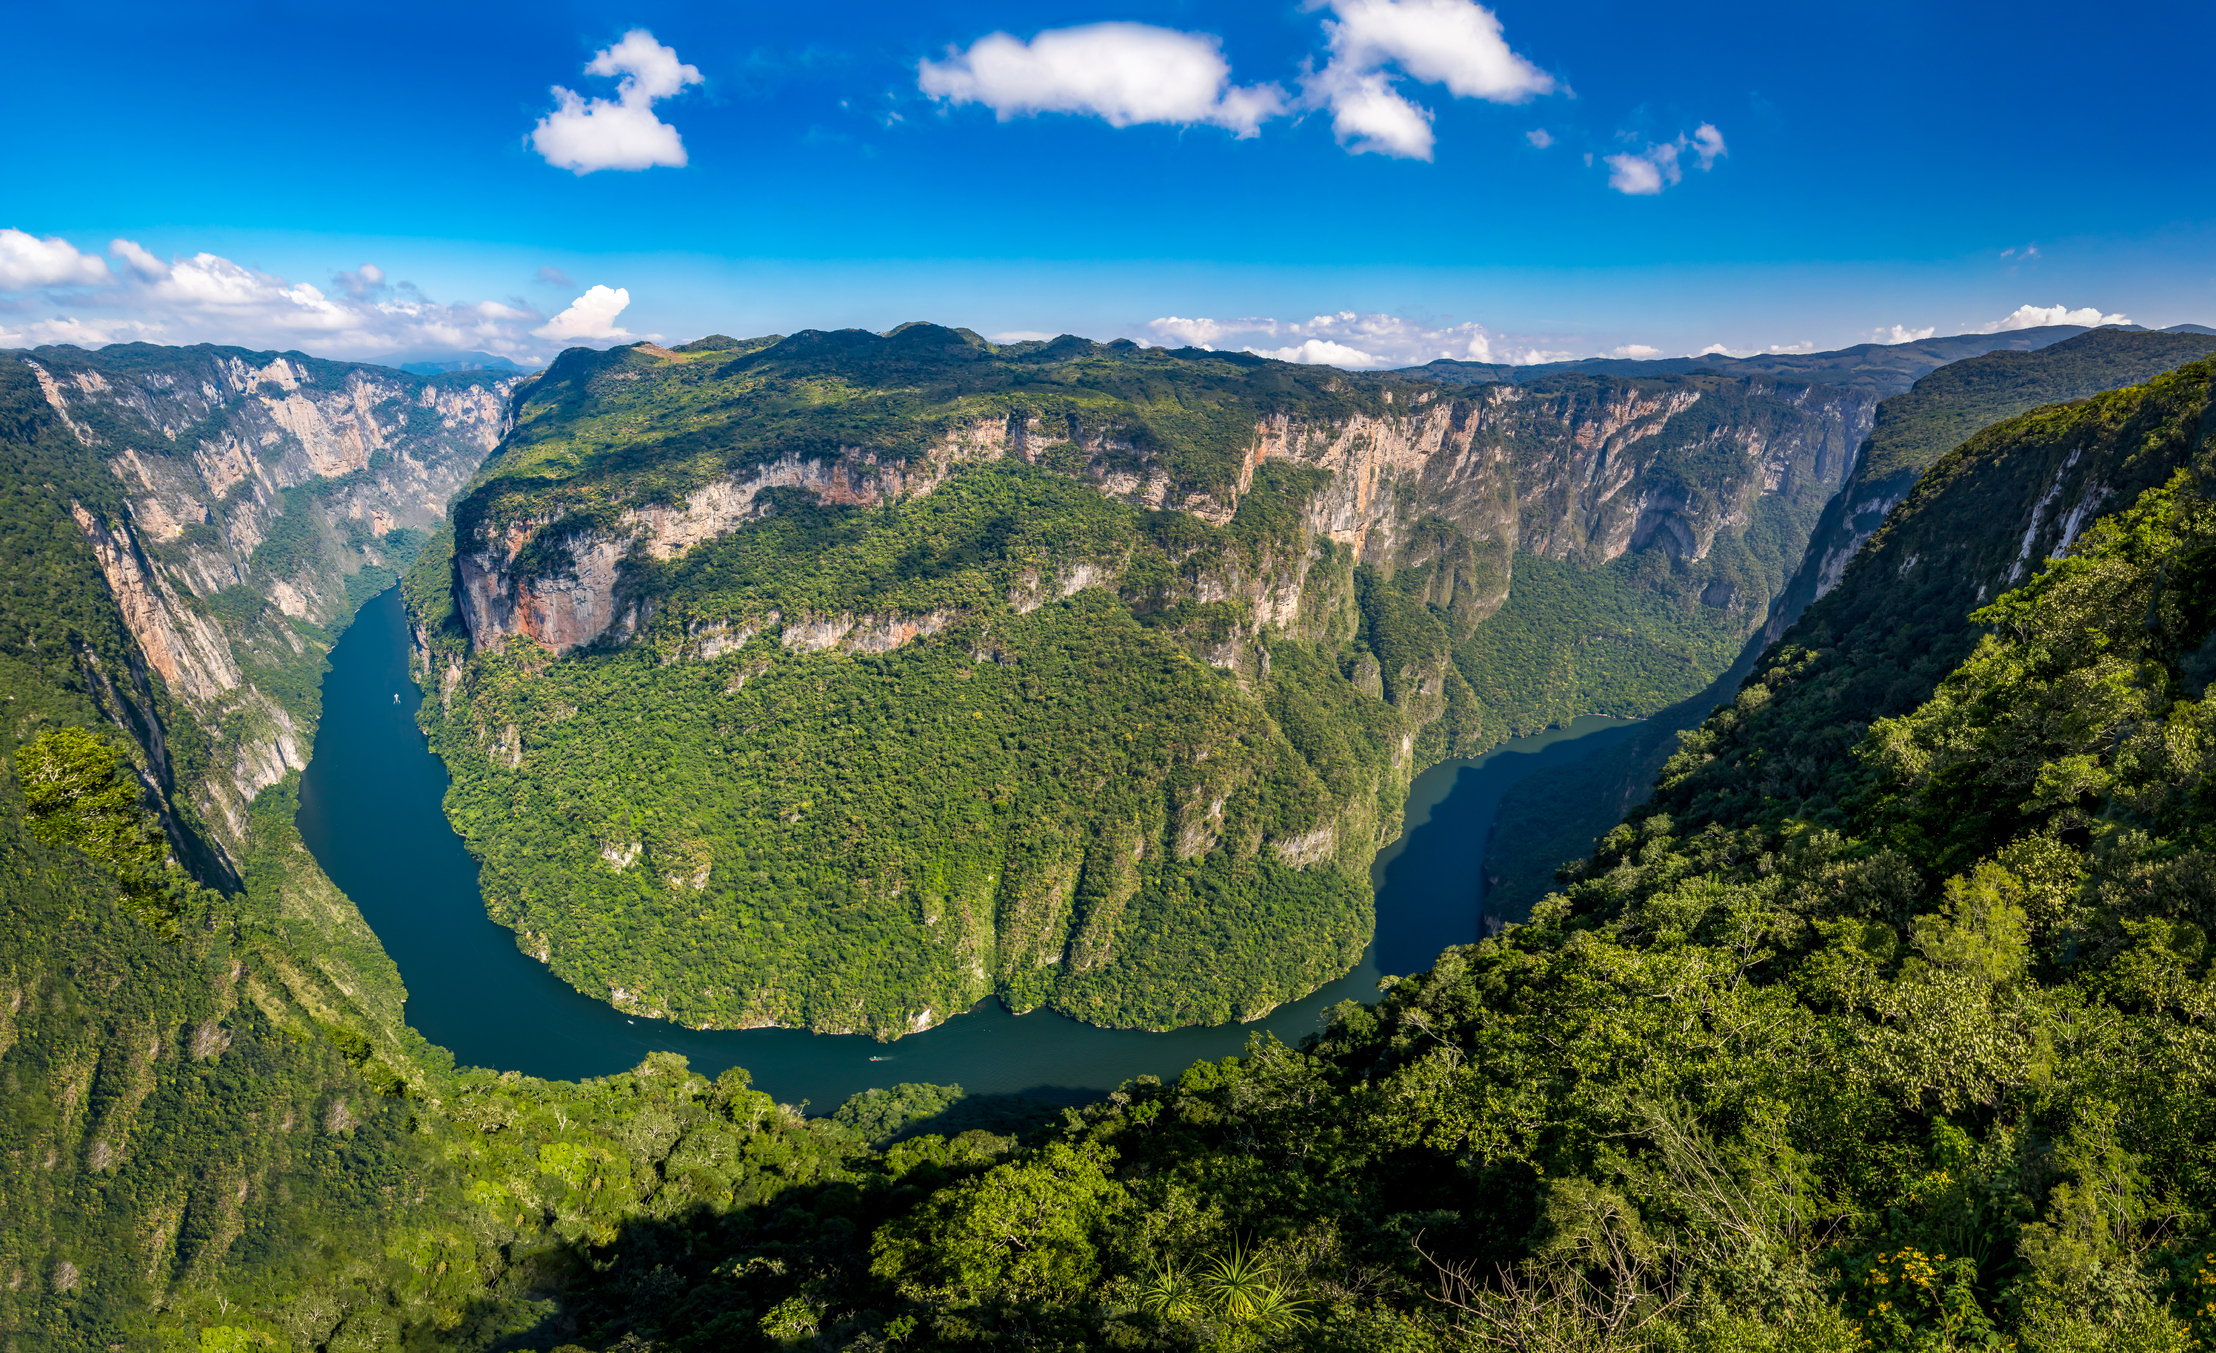 Puedes navegar a través del Cañón del Sumidero en Chiapas. (Foto: Istock)